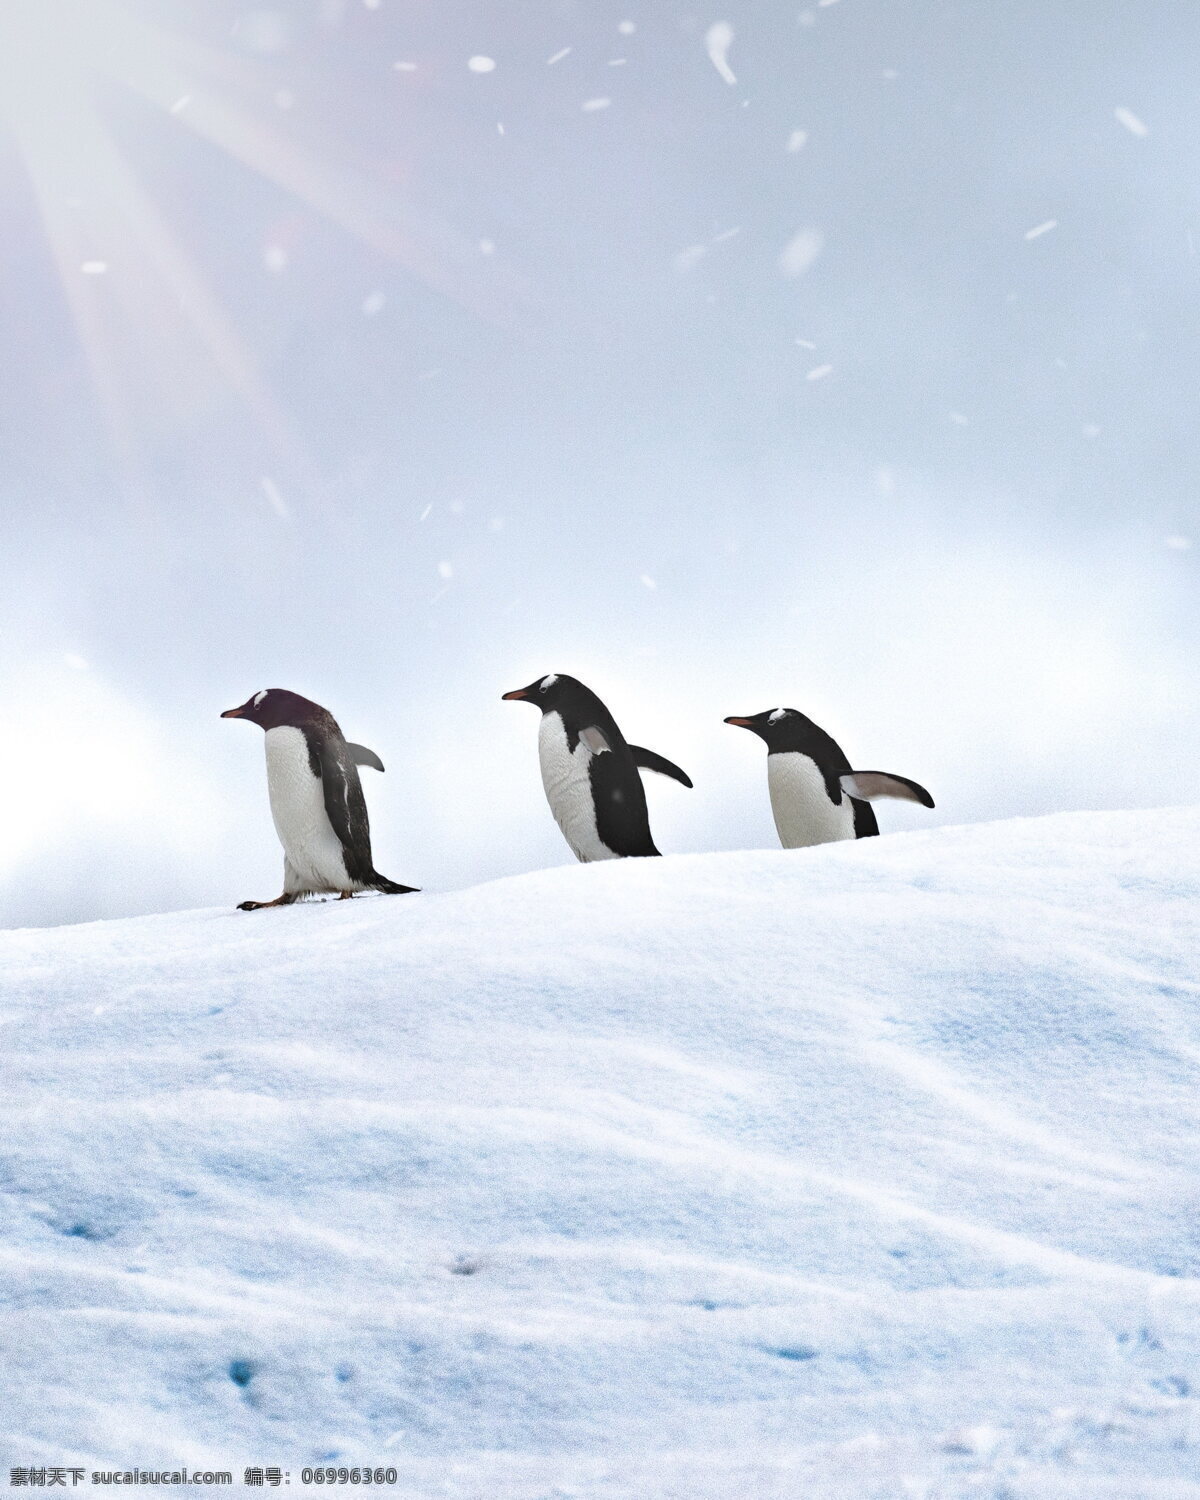 小企鹅萌萌 小企鹅 萌企鹅 冰雪 雪地 南极 可爱 萌萌哒 企鹅 南极企鹅 可爱企鹅 南极动物 保护动物 生物世界 海洋生物